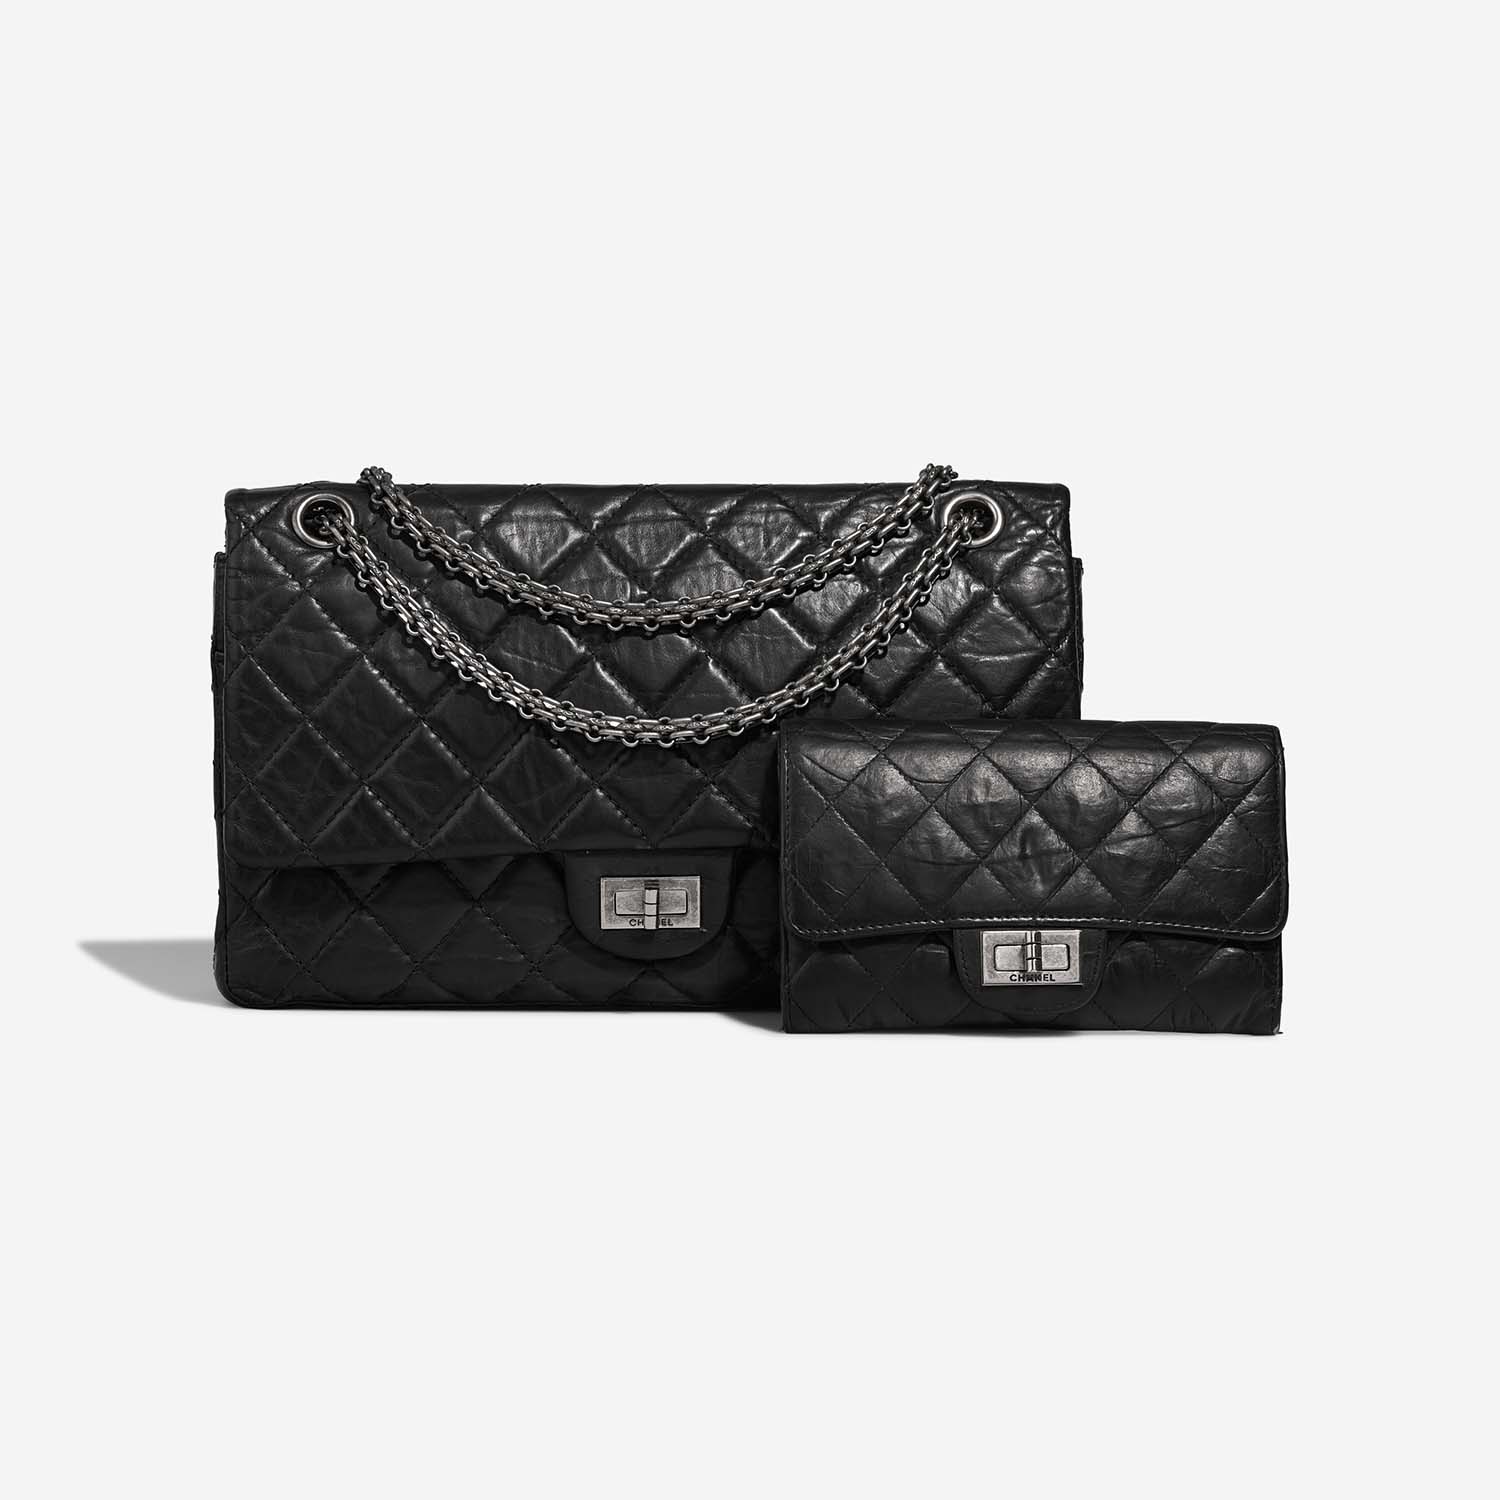 Chanel 255 226 Schwarz Front 1 S | Verkaufen Sie Ihre Designer-Tasche auf Saclab.com